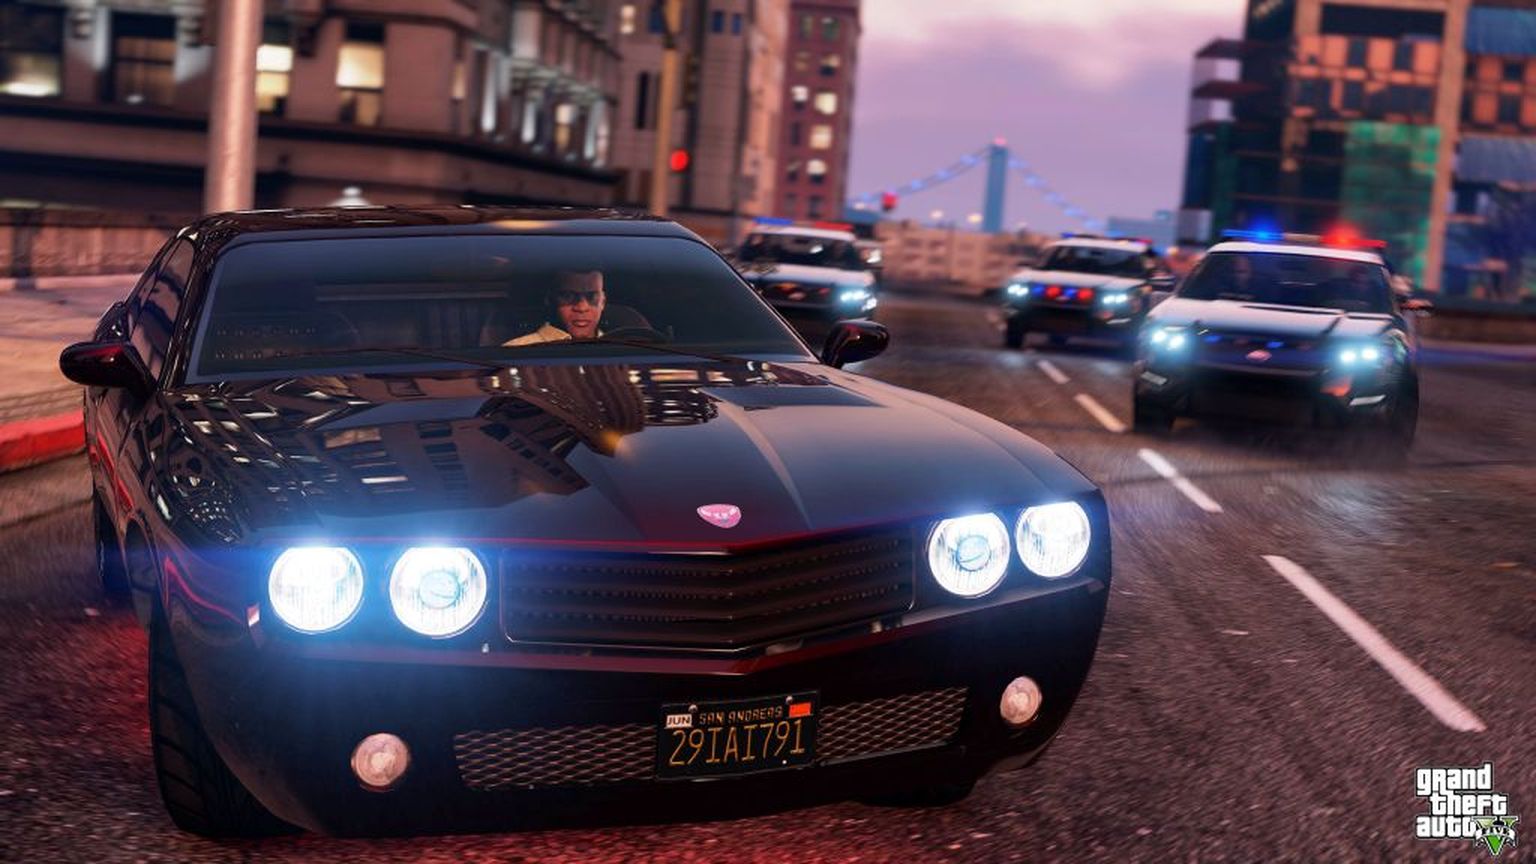 Virtuaalses libamaailmas «GTA» on lubatud kõik kavatsused. Mängu viiendas versioonis saavad mängijad lisaks autode varastamisele, narkokaubitsemisele, tapmisele ja prostituutidega mehkeldamisele lisapunkte vägistamise ja naise peksmise eest.